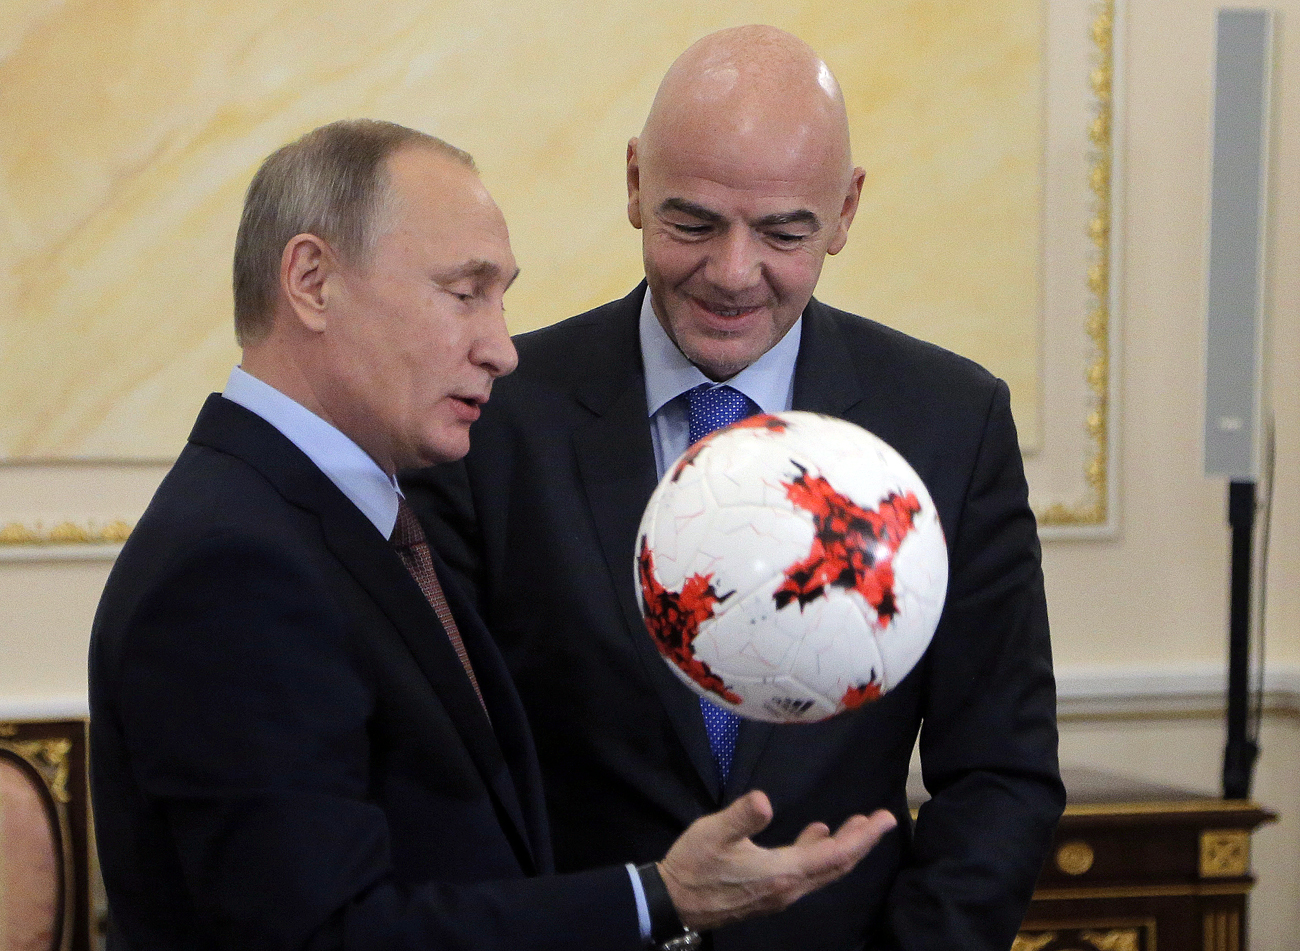 Претседателот на Русија Владимир Путин (лево) ја прима официјалната топка за Купот на конфедерациите 2017 од претседателот на ФИФА Џани Инфантино во текот на средбата во Кремљ. Москва, Русија. 